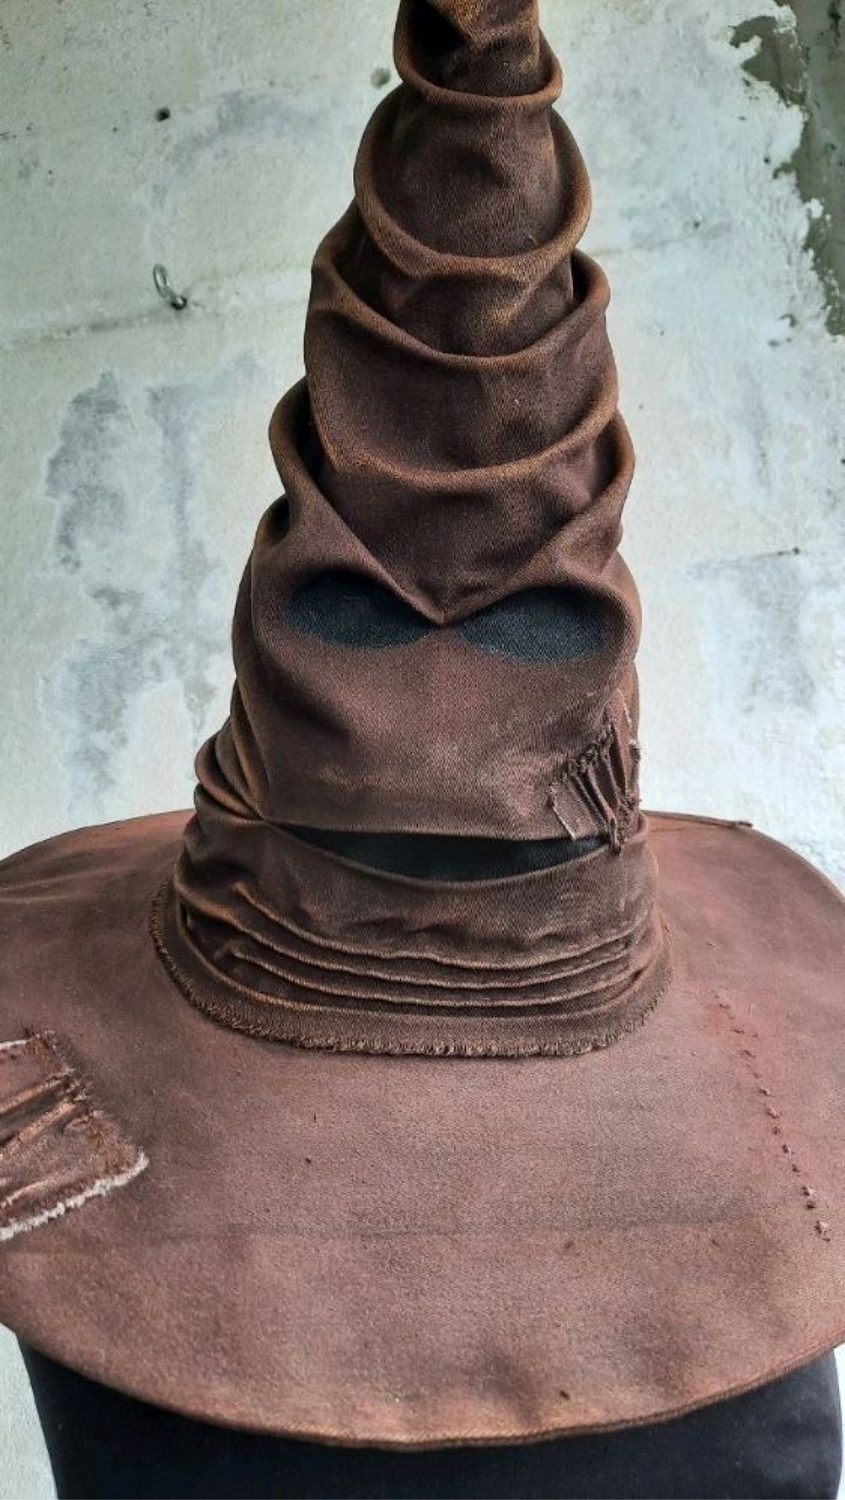 Фото №1 к отзыву покупателя RAHIMI’s✨ о товаре Сортировочная шляпа 40 см Гарри Поттер, Sorting hat Harry Potter.